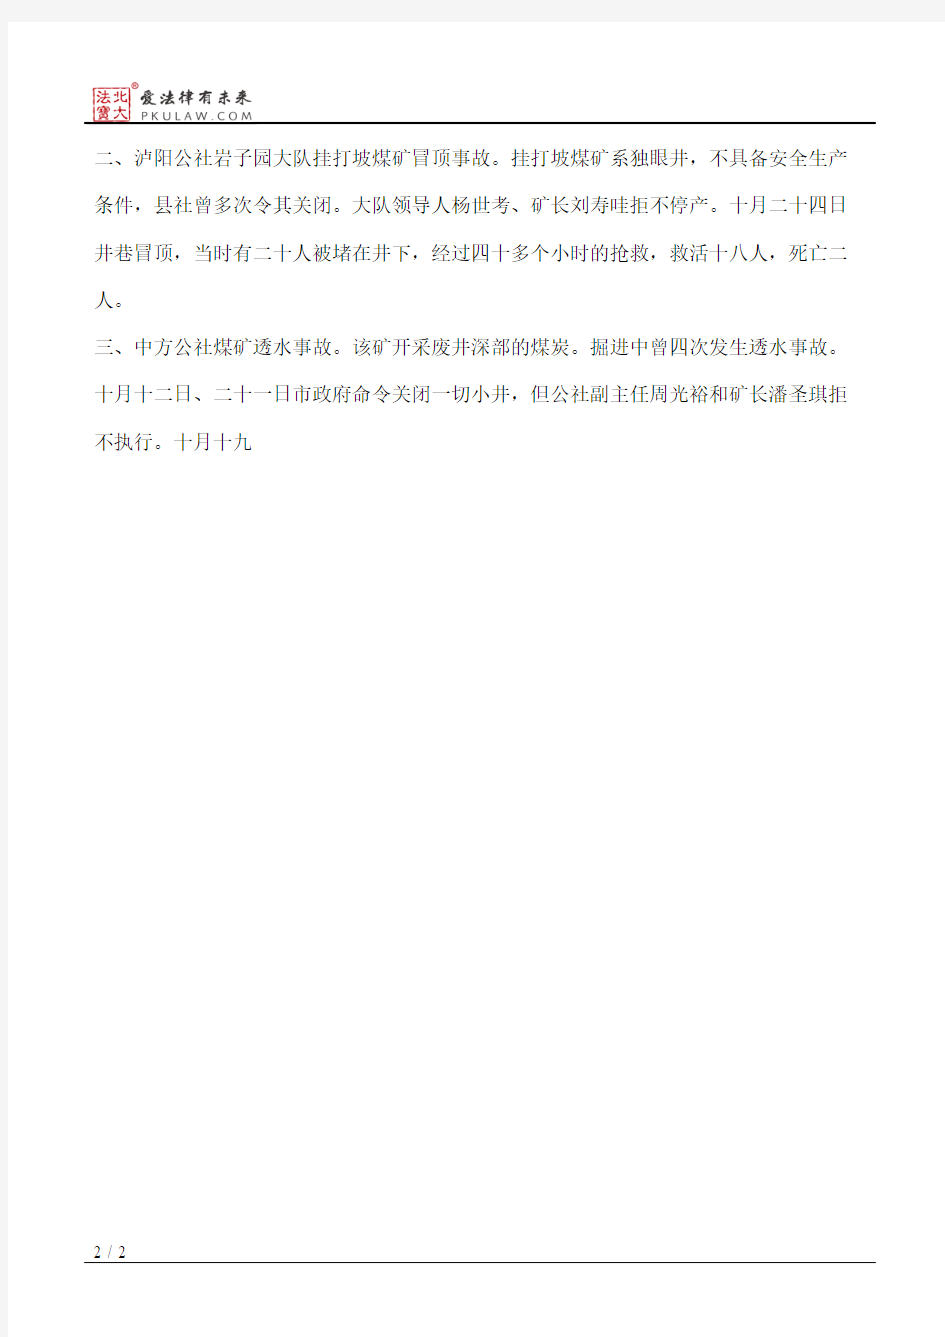 国务院办公厅关于湖南省怀化市社队煤矿三起重大伤亡事故的通报